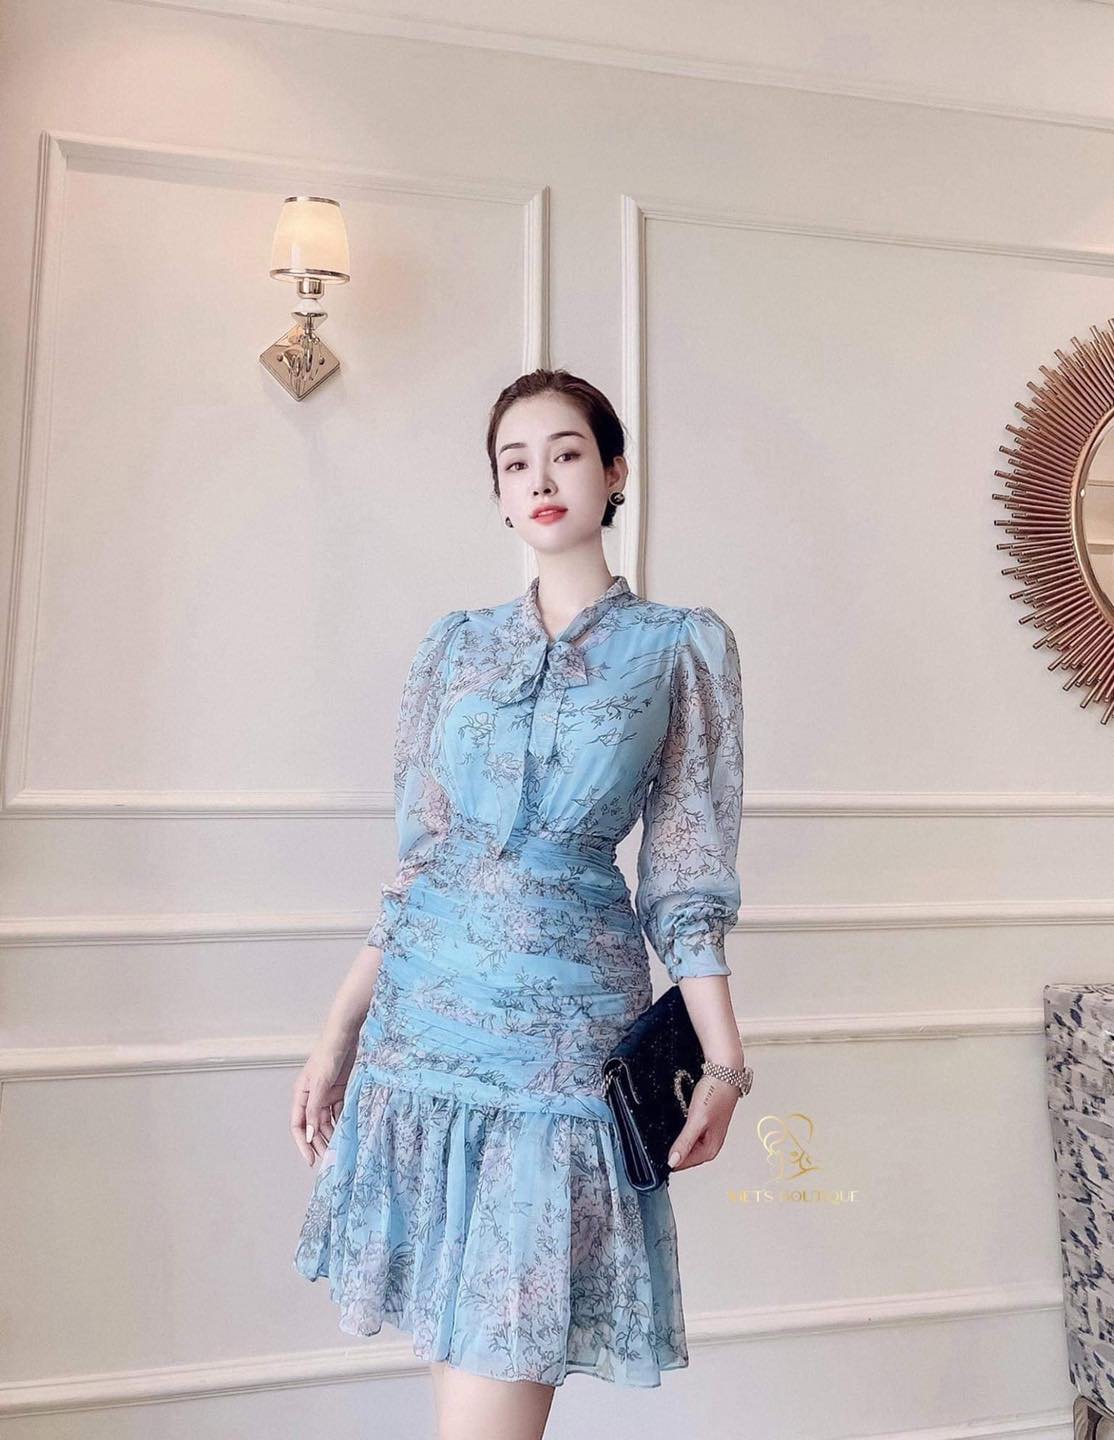 D261 : Đầm voan hoa Hàn Quốc dài tay phồng eo chun xinh đẹp - yishop.com.vn